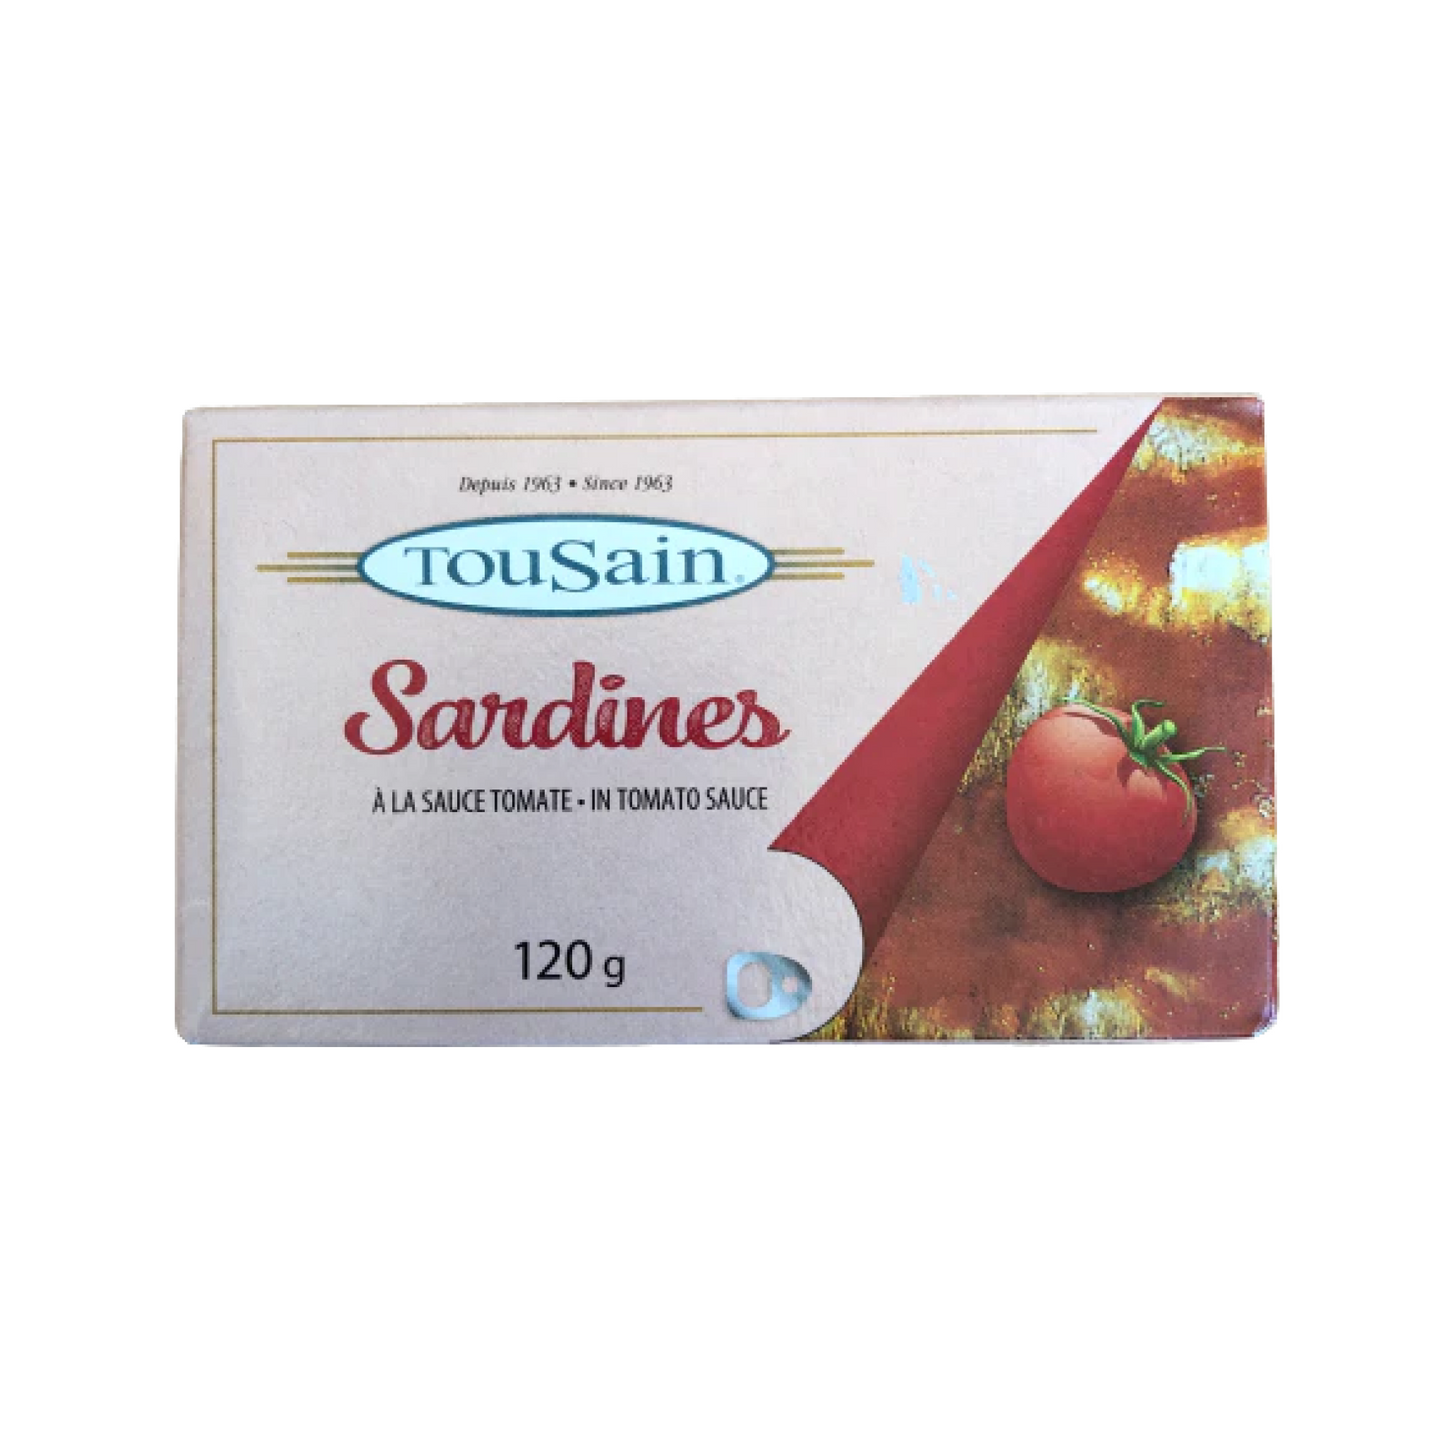 TouSain Sardines in Tomato Sauce 120g